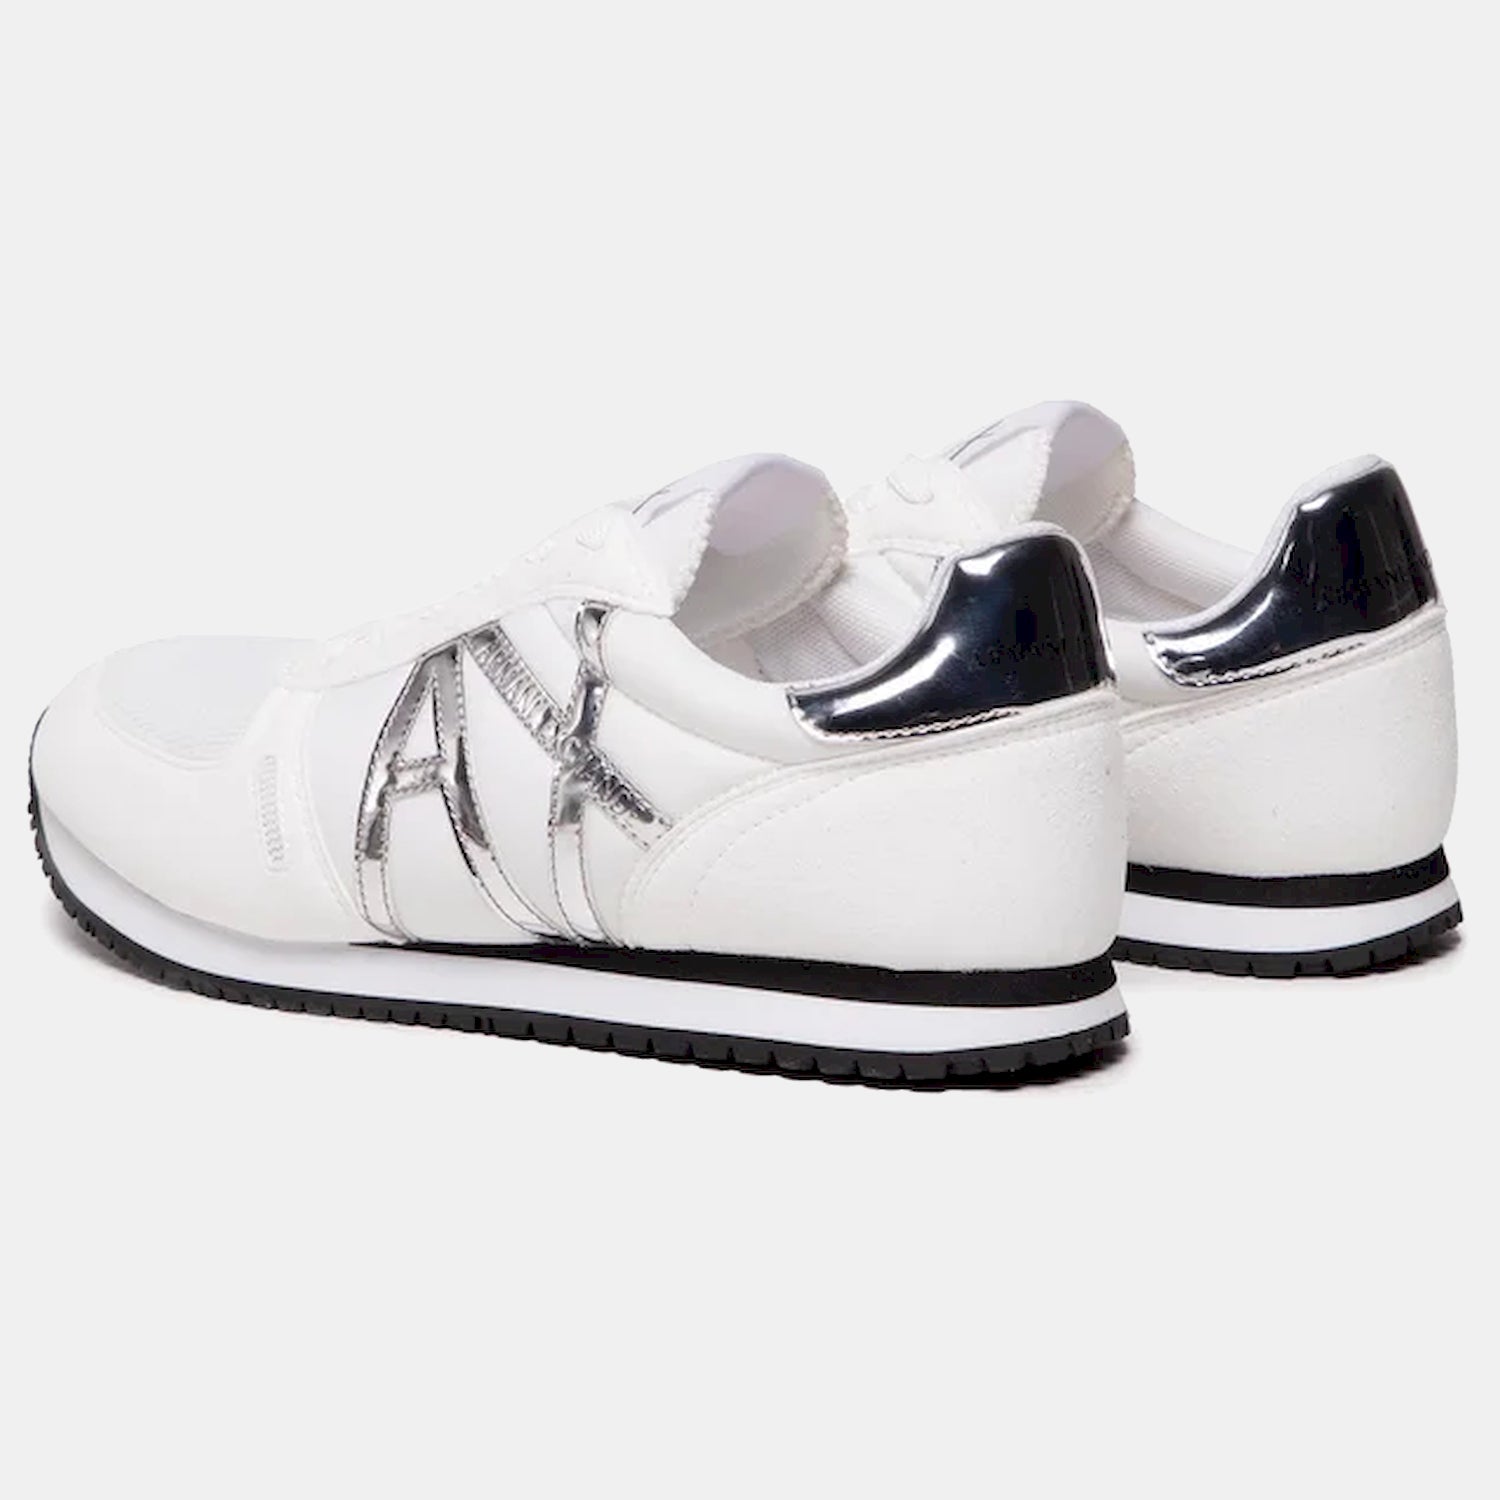 Armani Exchange Sapatilhas Sneakers Shoes Xdx031 Xcc62 Whi Silver Branco Prateado_shot1